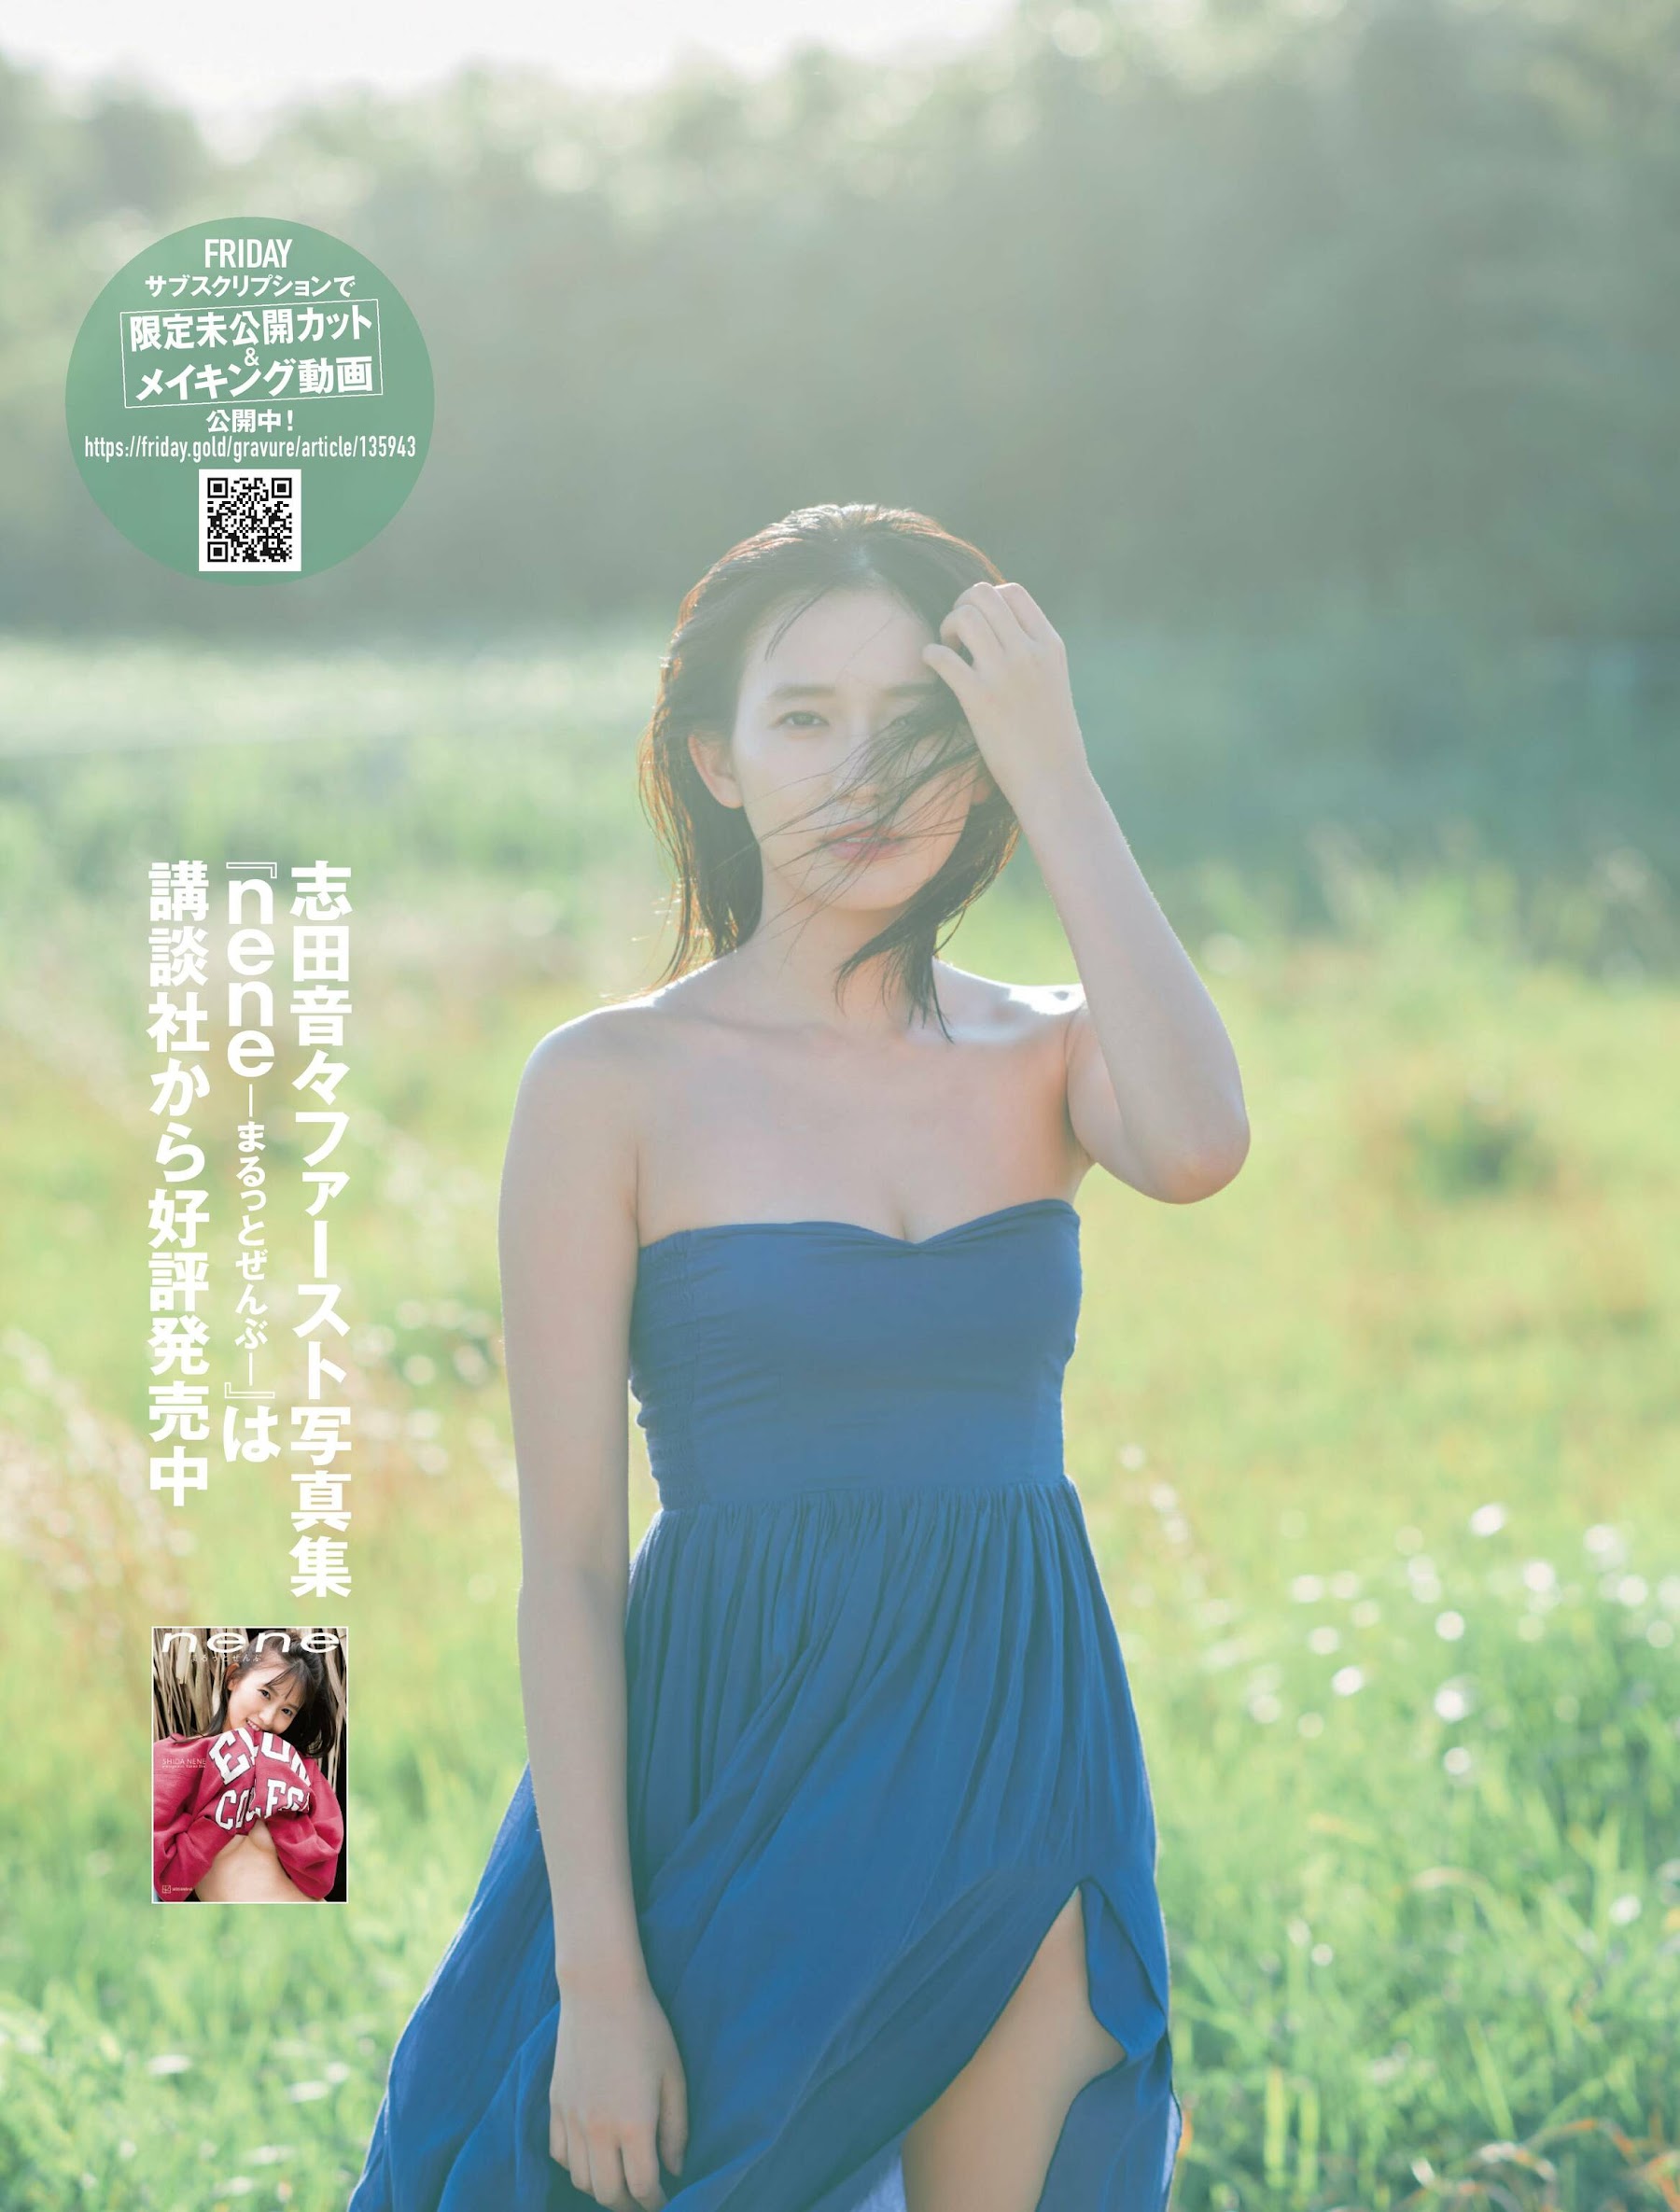 志田音々 大久保桜子 磯山さやか Weekly Playboy IkfYtR.jpg